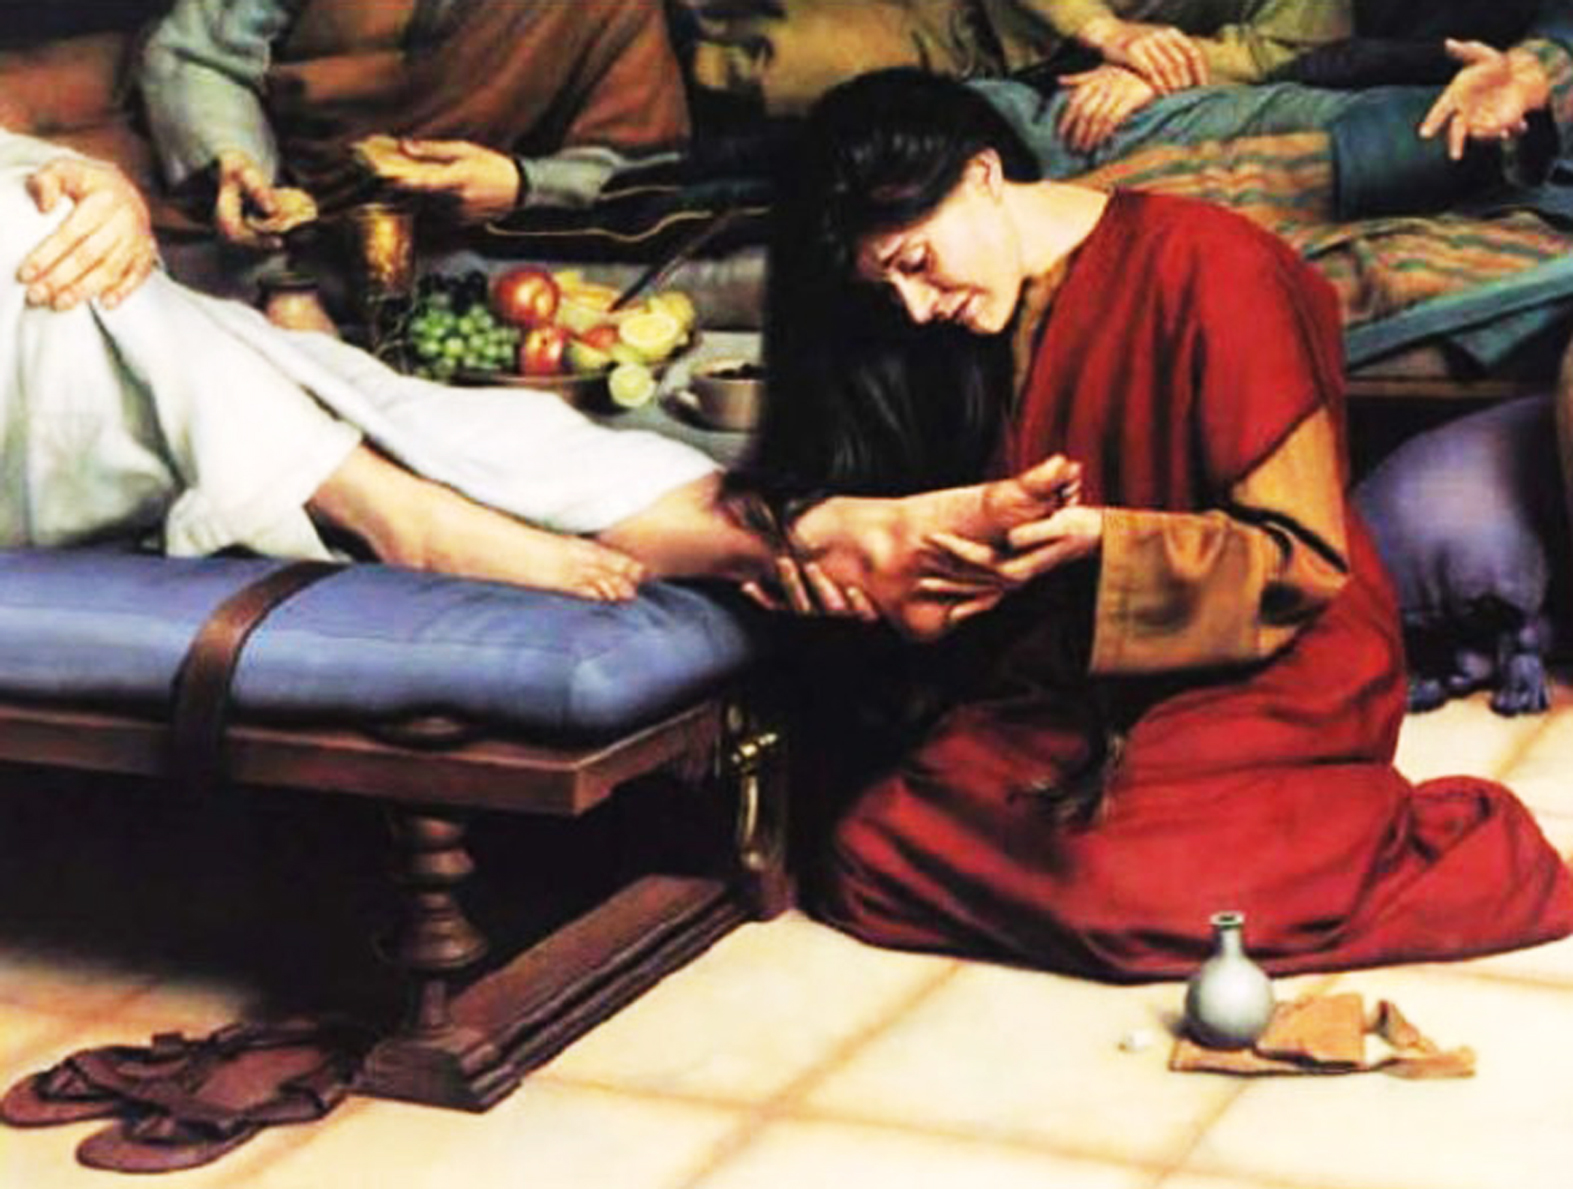 Resultado de imagen para maria de betania le unge los pies a jesús